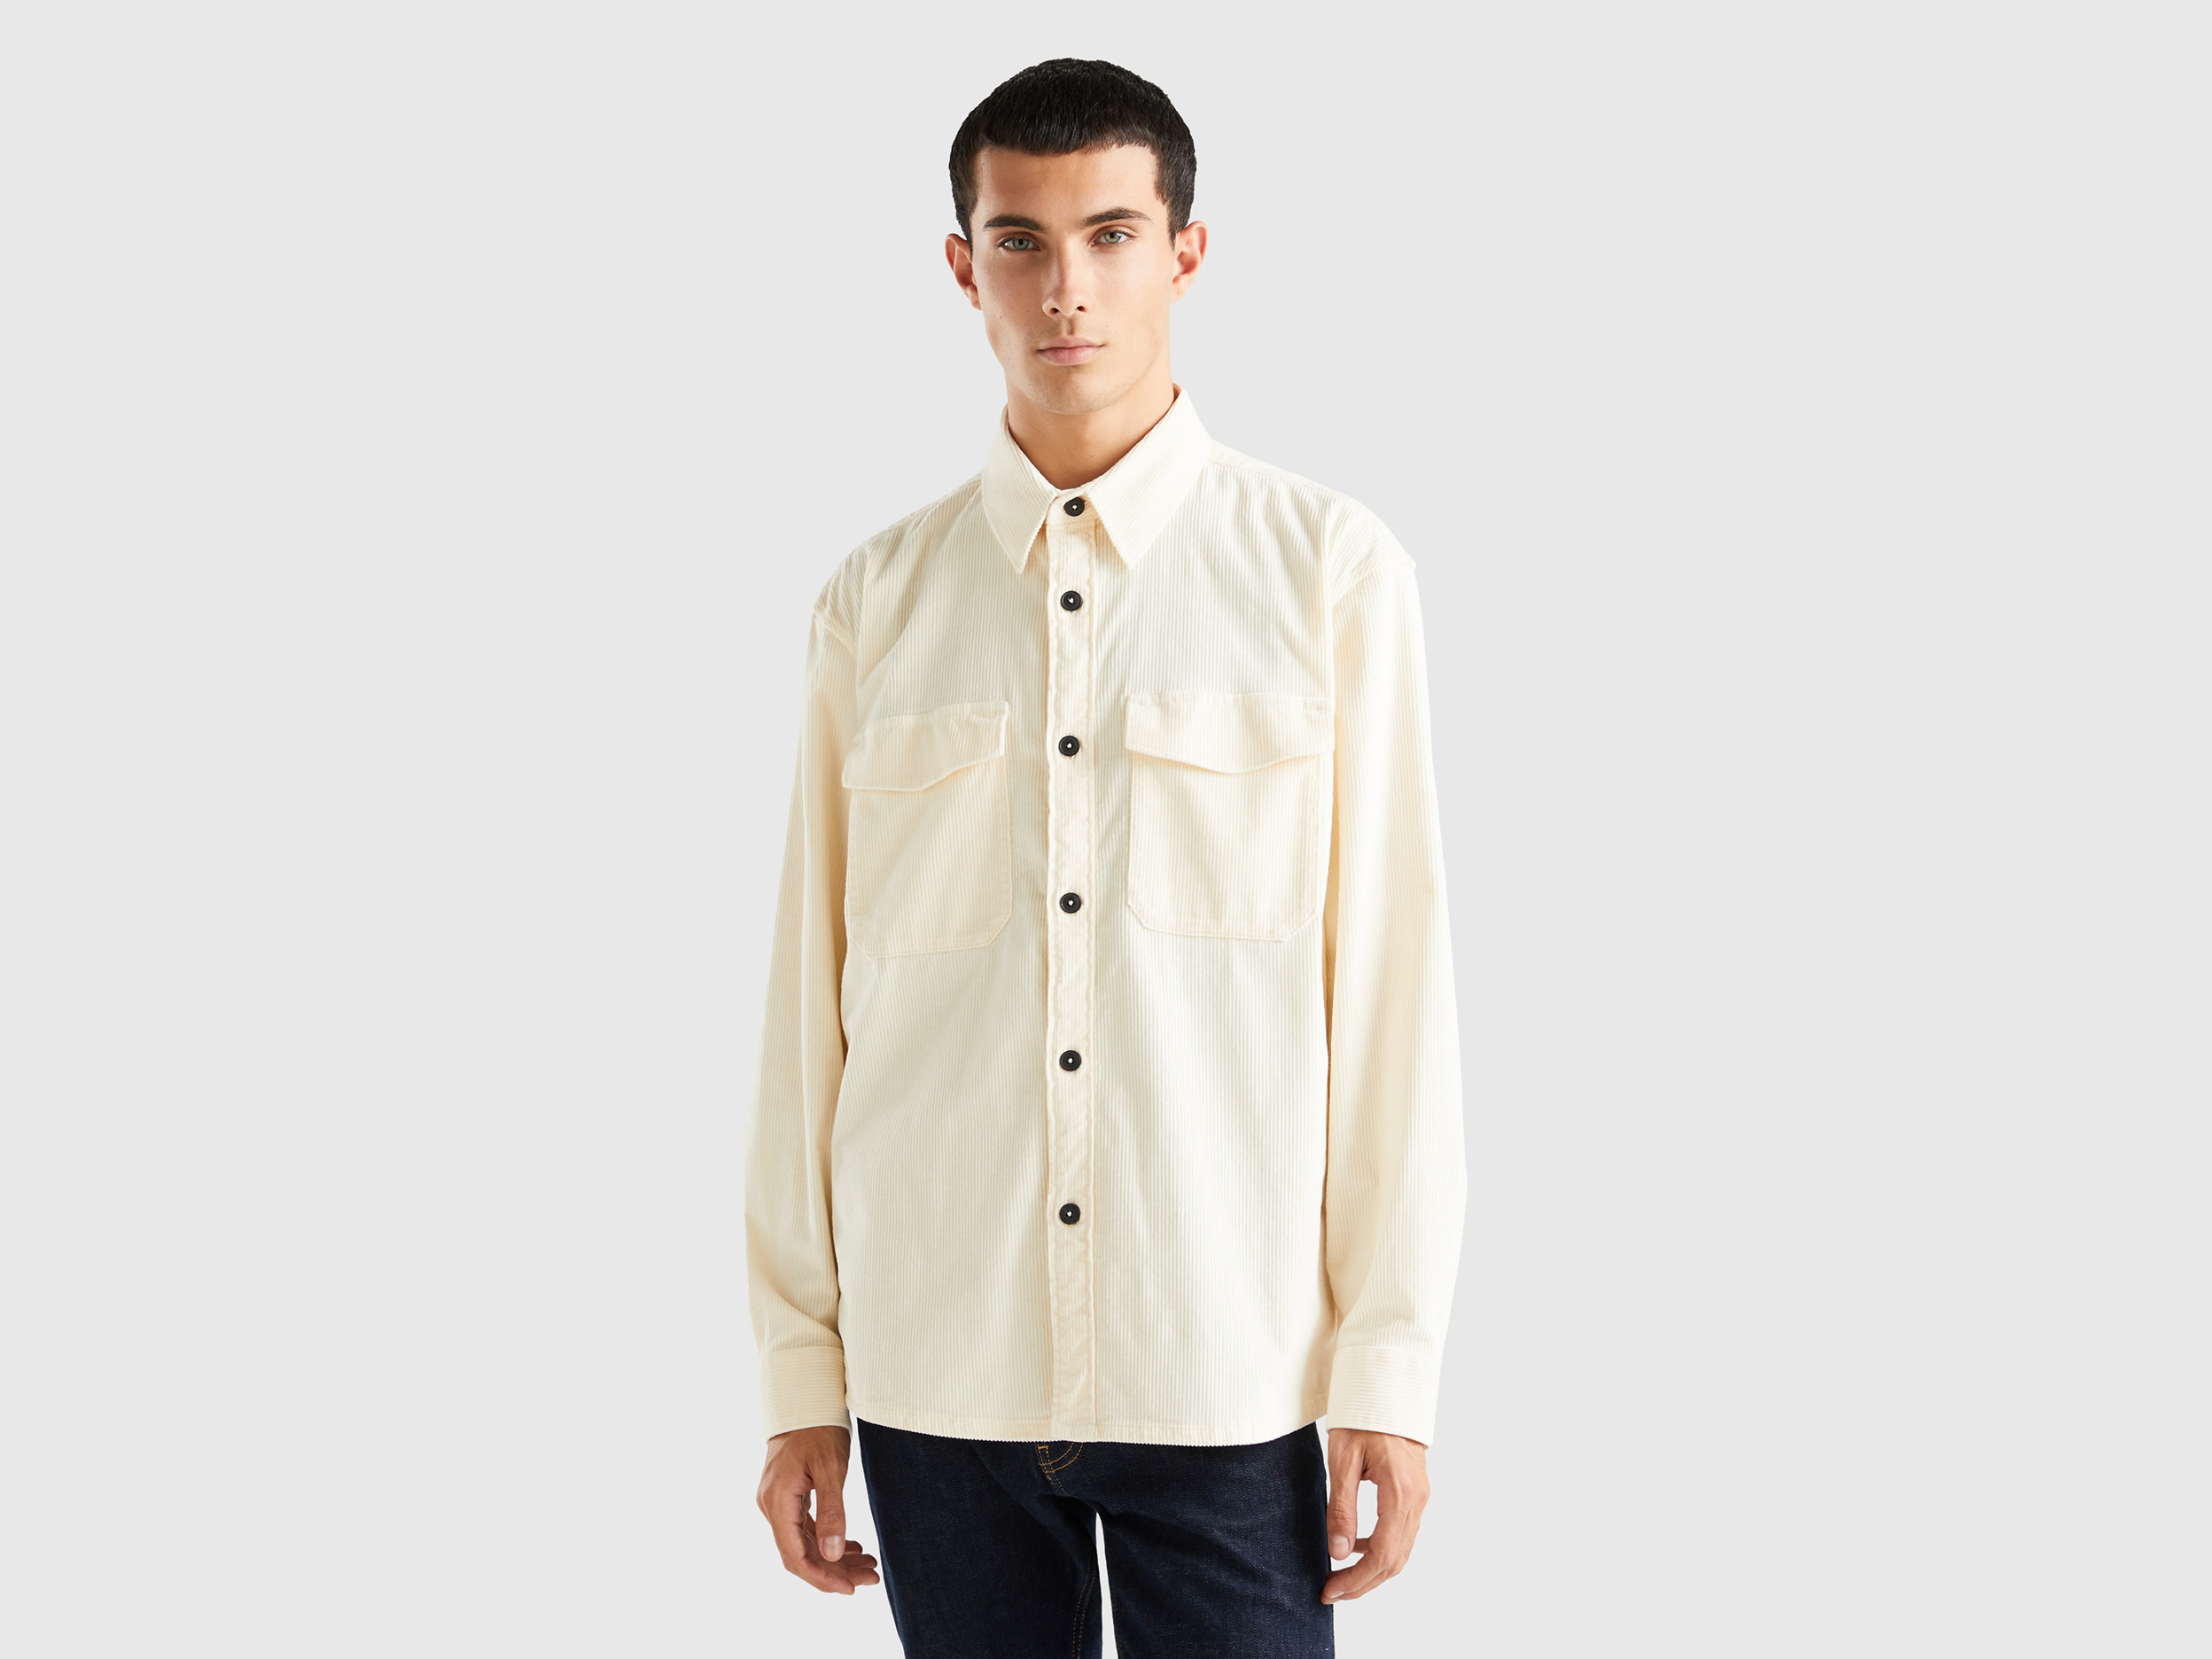 Benetton, Velvet Ribbed Shirt, size XS, Creamy White, Men